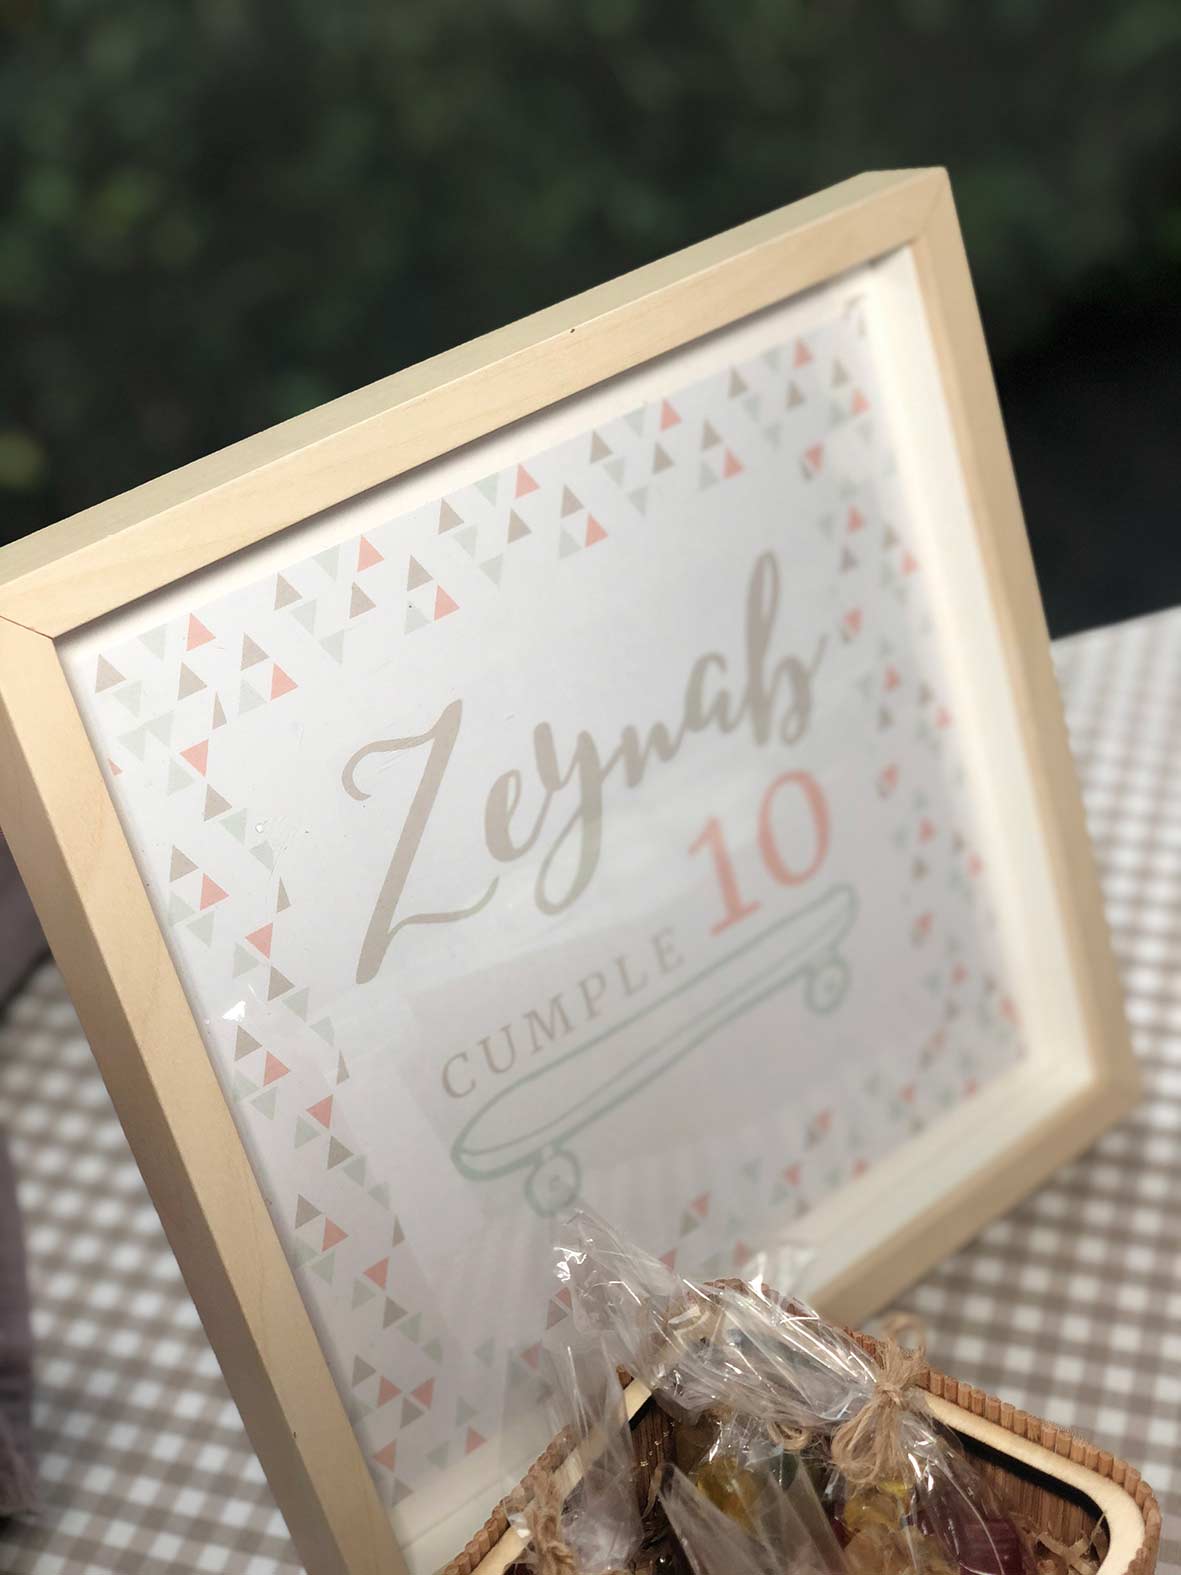 oh chic 10 cumpleanos zeynab 03 - 10º Cumpleaños de Zeynab